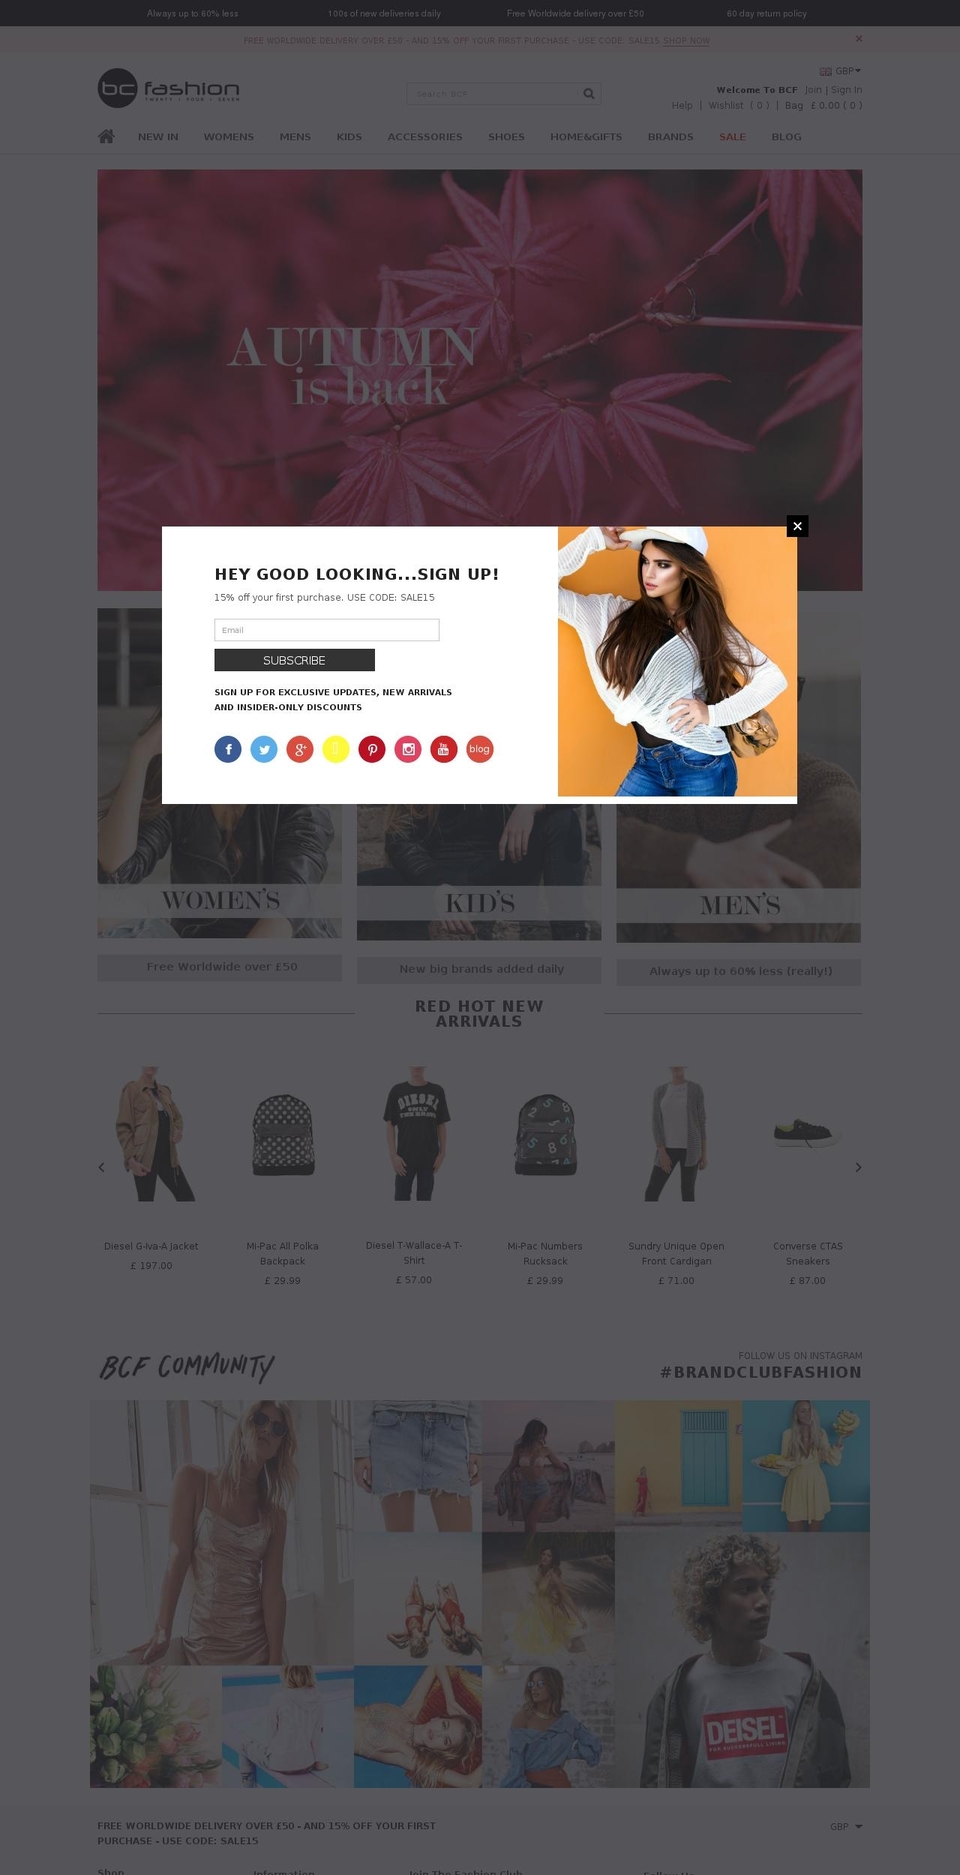 bcfashion.com shopify website screenshot